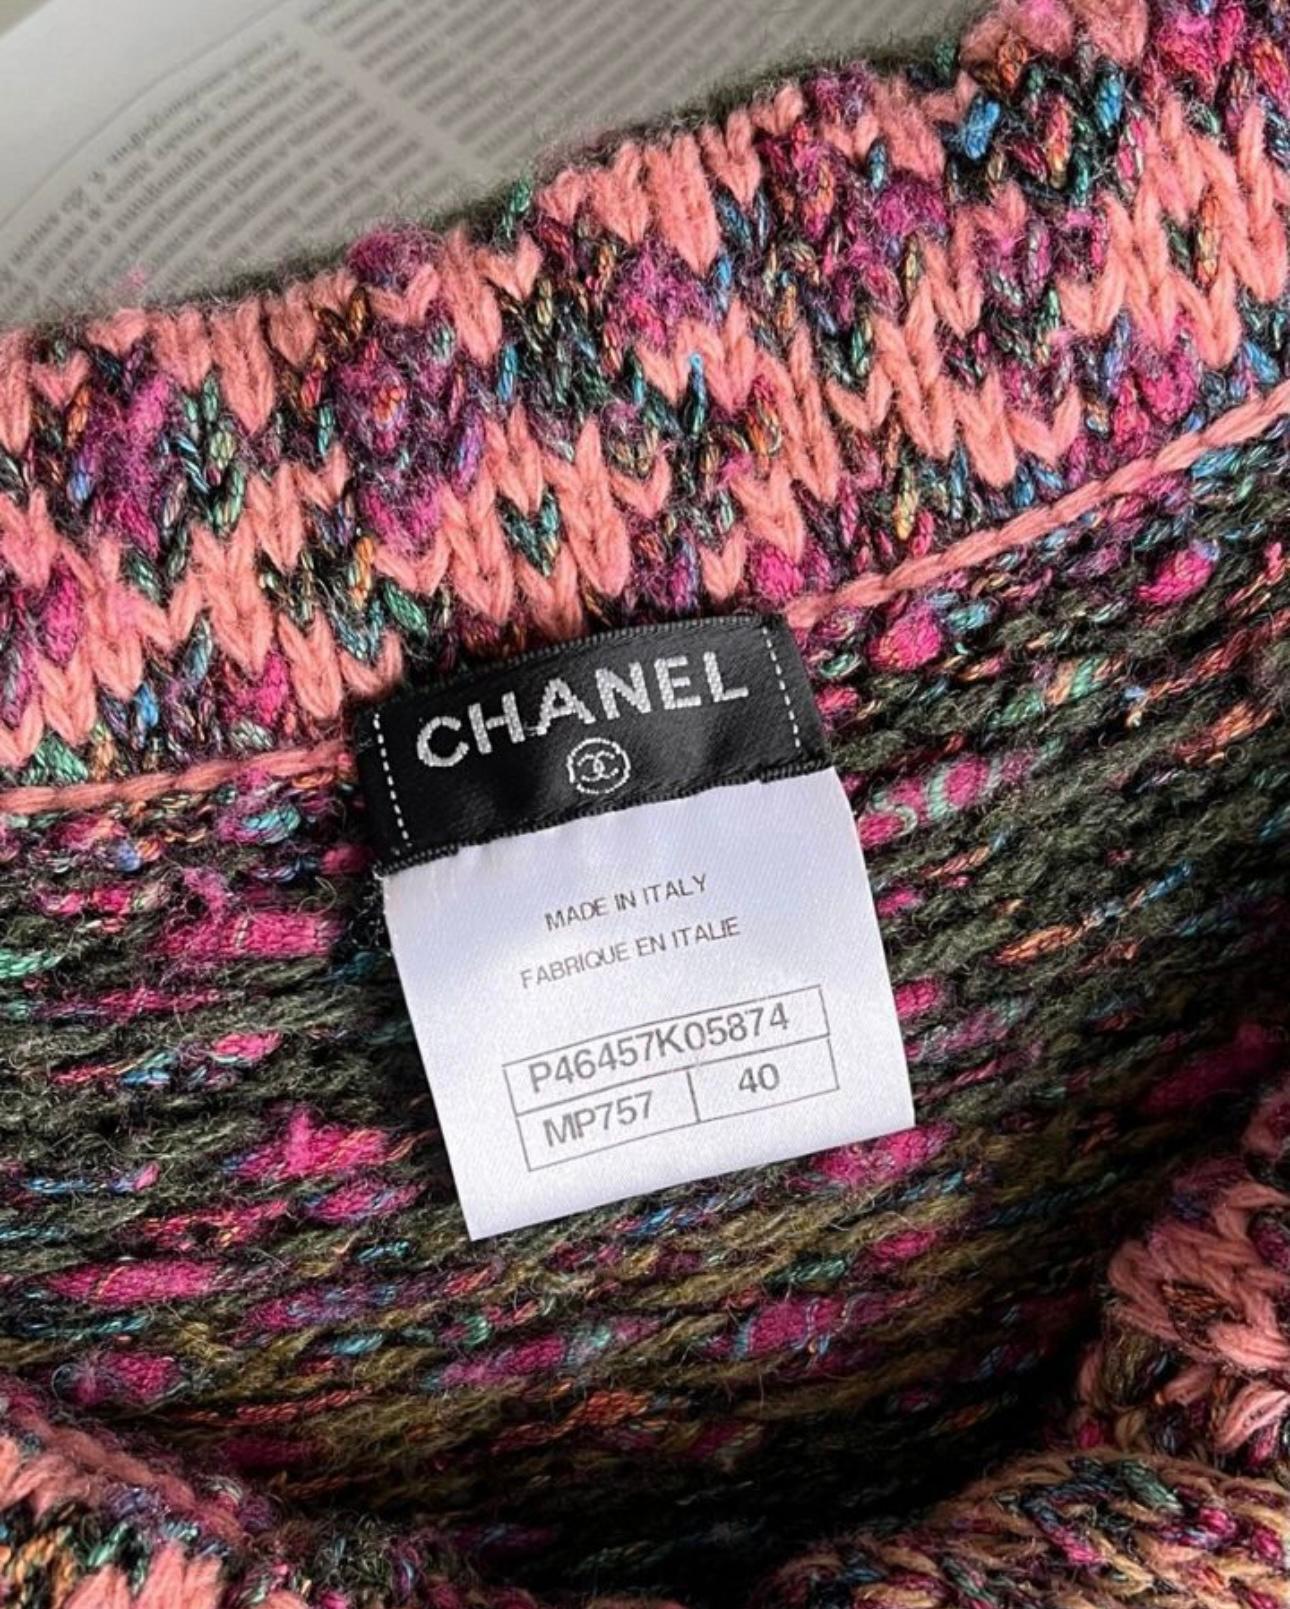 Chanel Paris / Edinburgh CC Jewel Buttons Cashmere Set 4